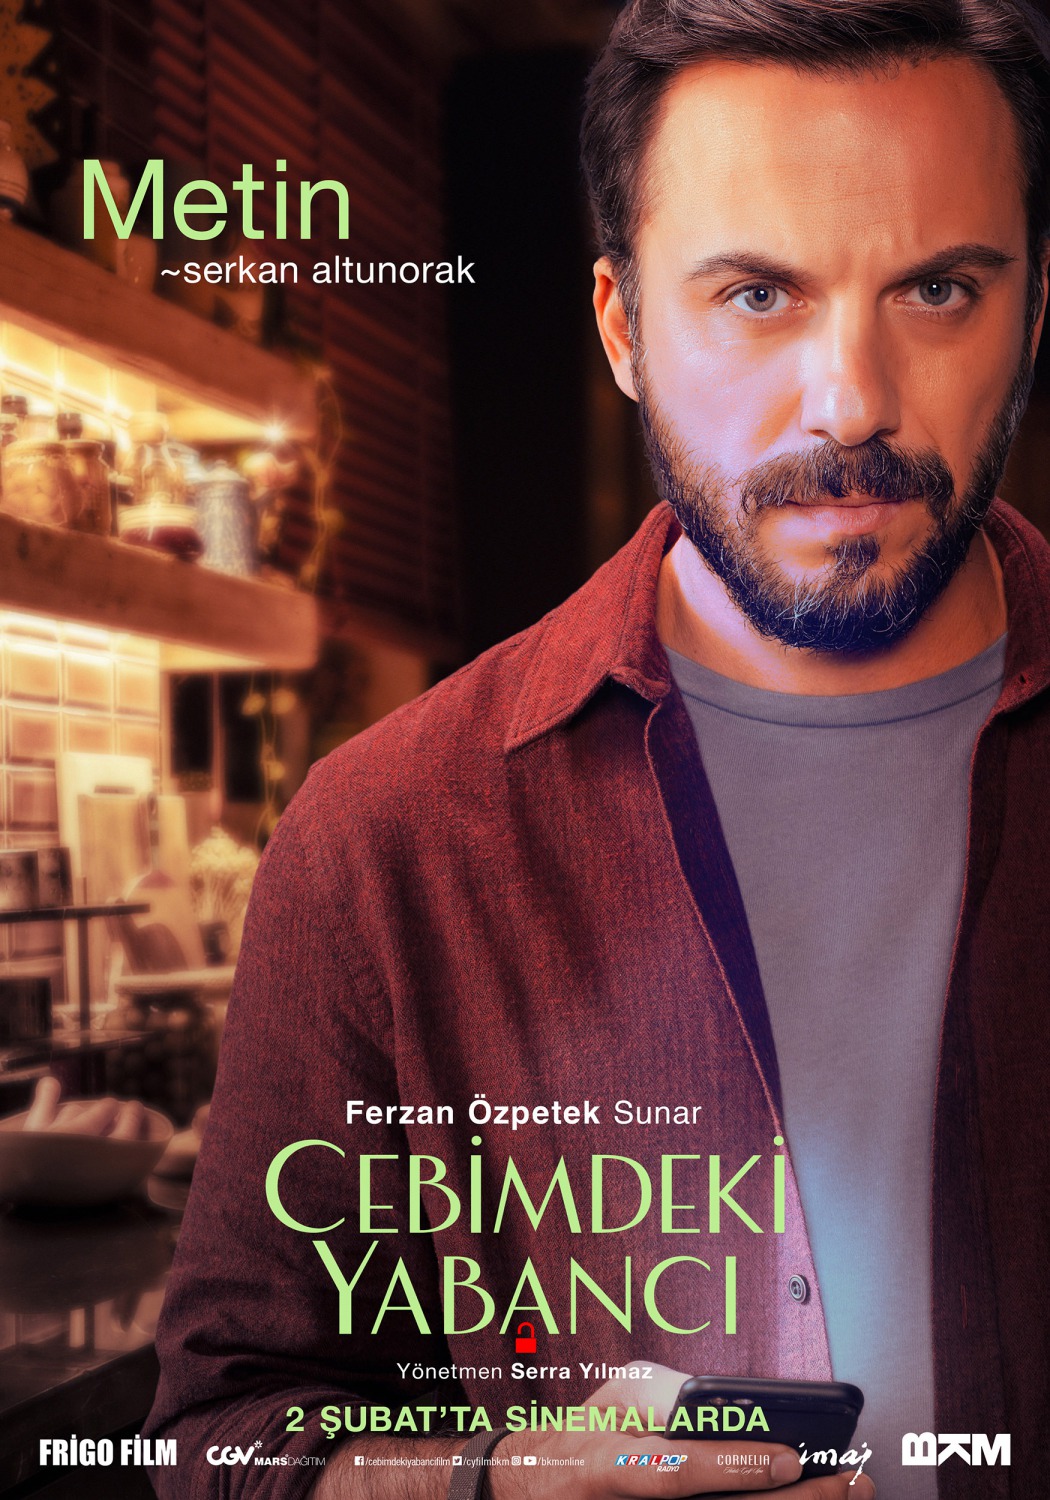 Extra Large Movie Poster Image for Cebimdeki Yabancı (#5 of 10)